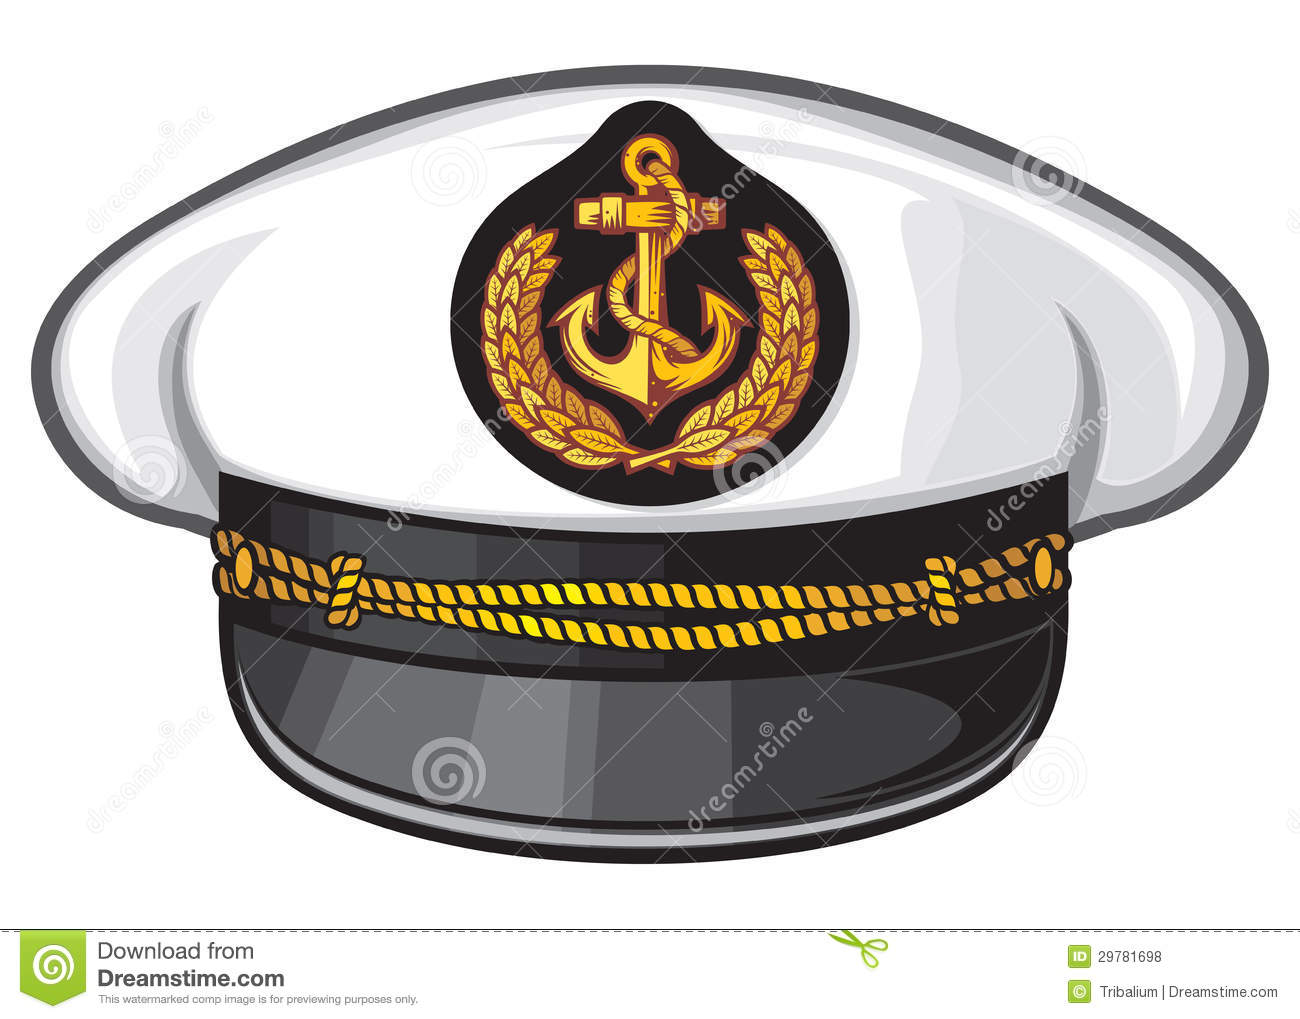 Cap clipart ship captain, Picture #324056 cap clipart ship.